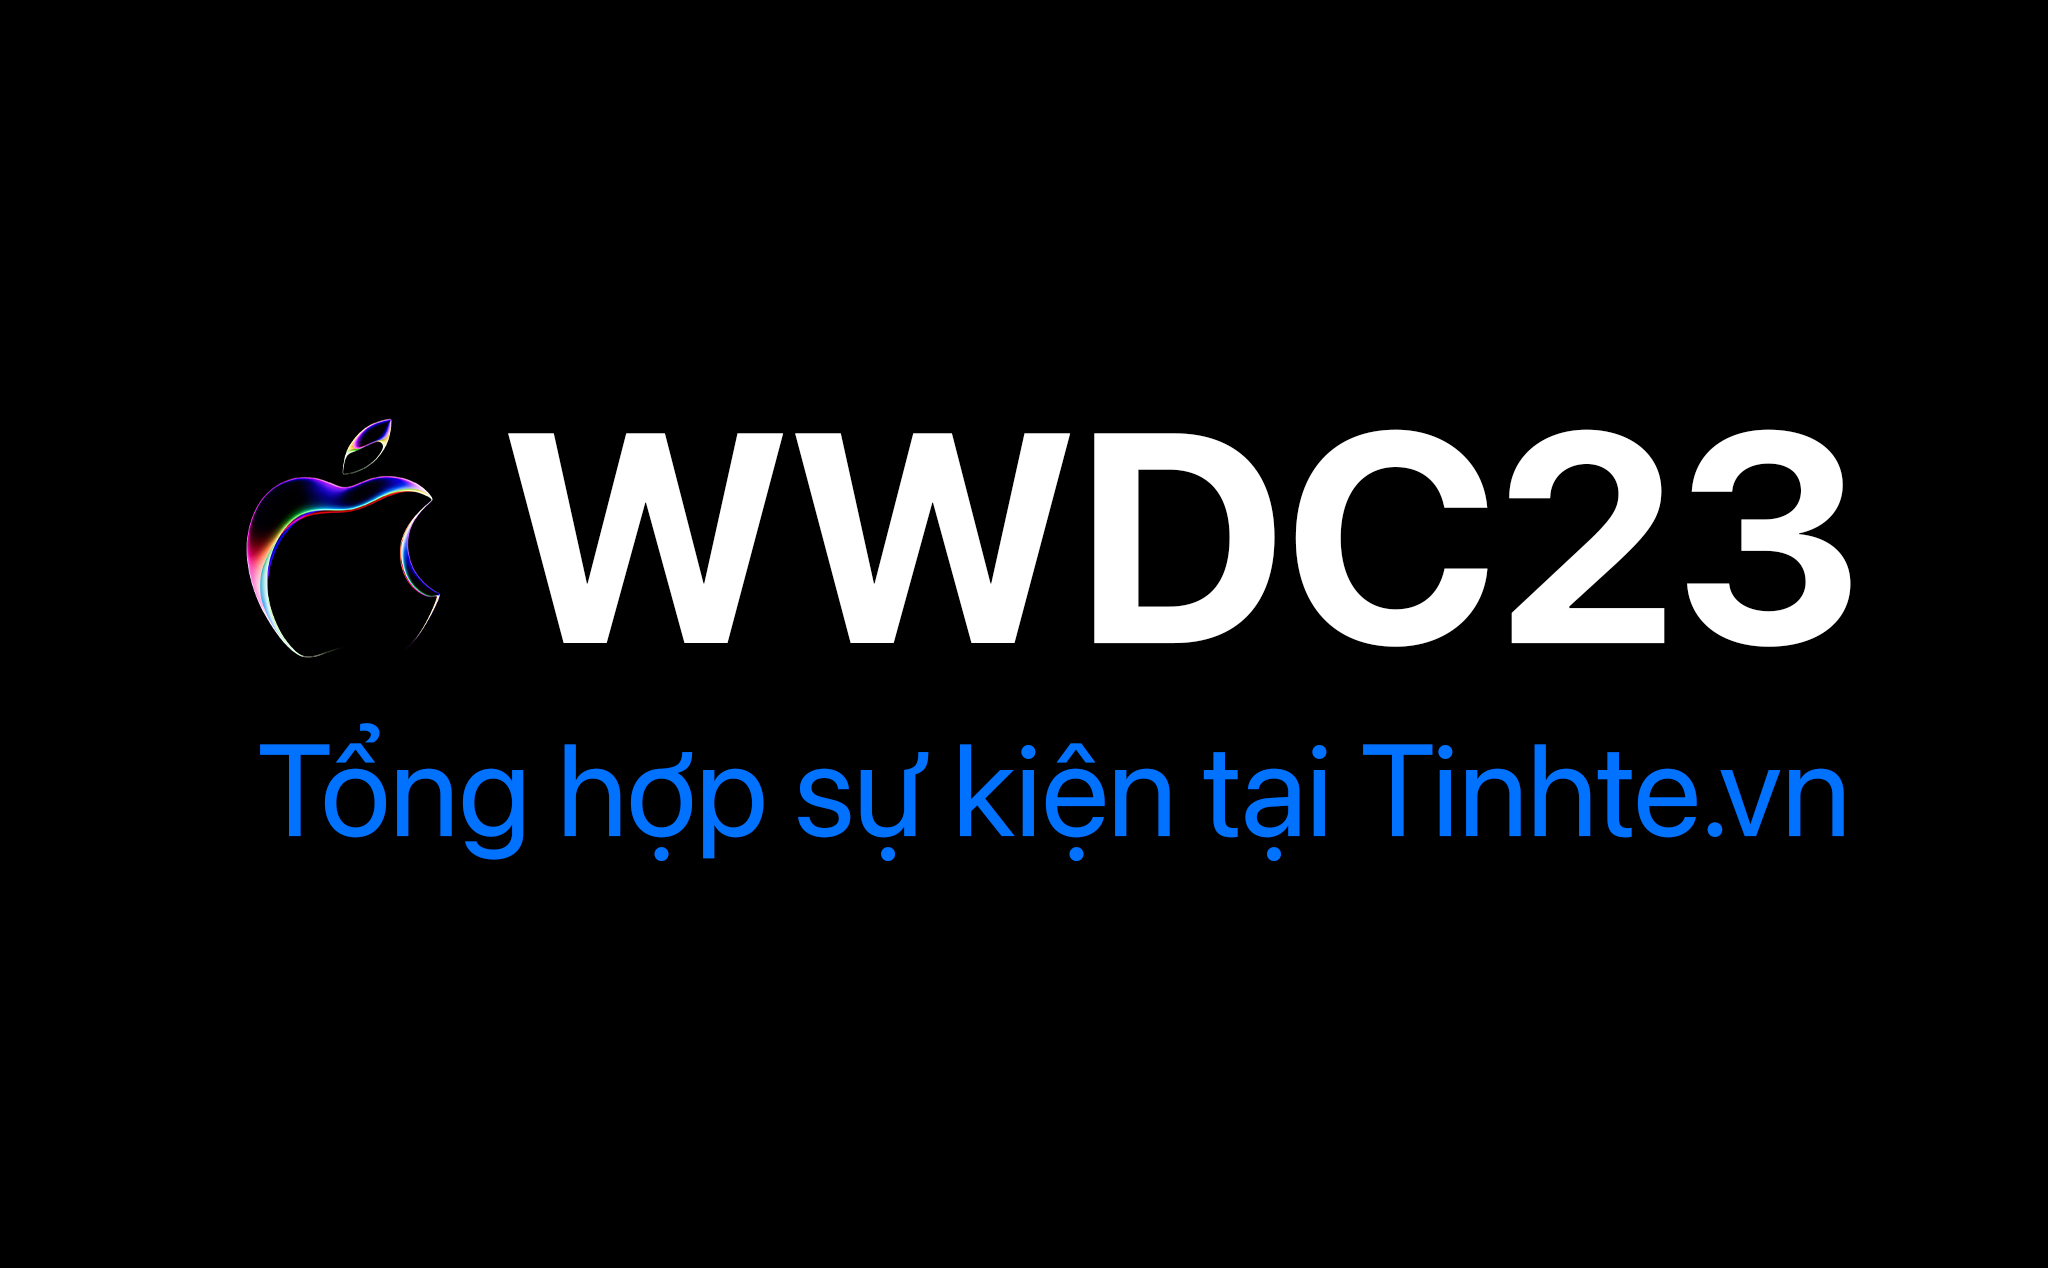 Tổng hợp sự kiện WWDC23: Cuối cùng cũng có One More Thing!